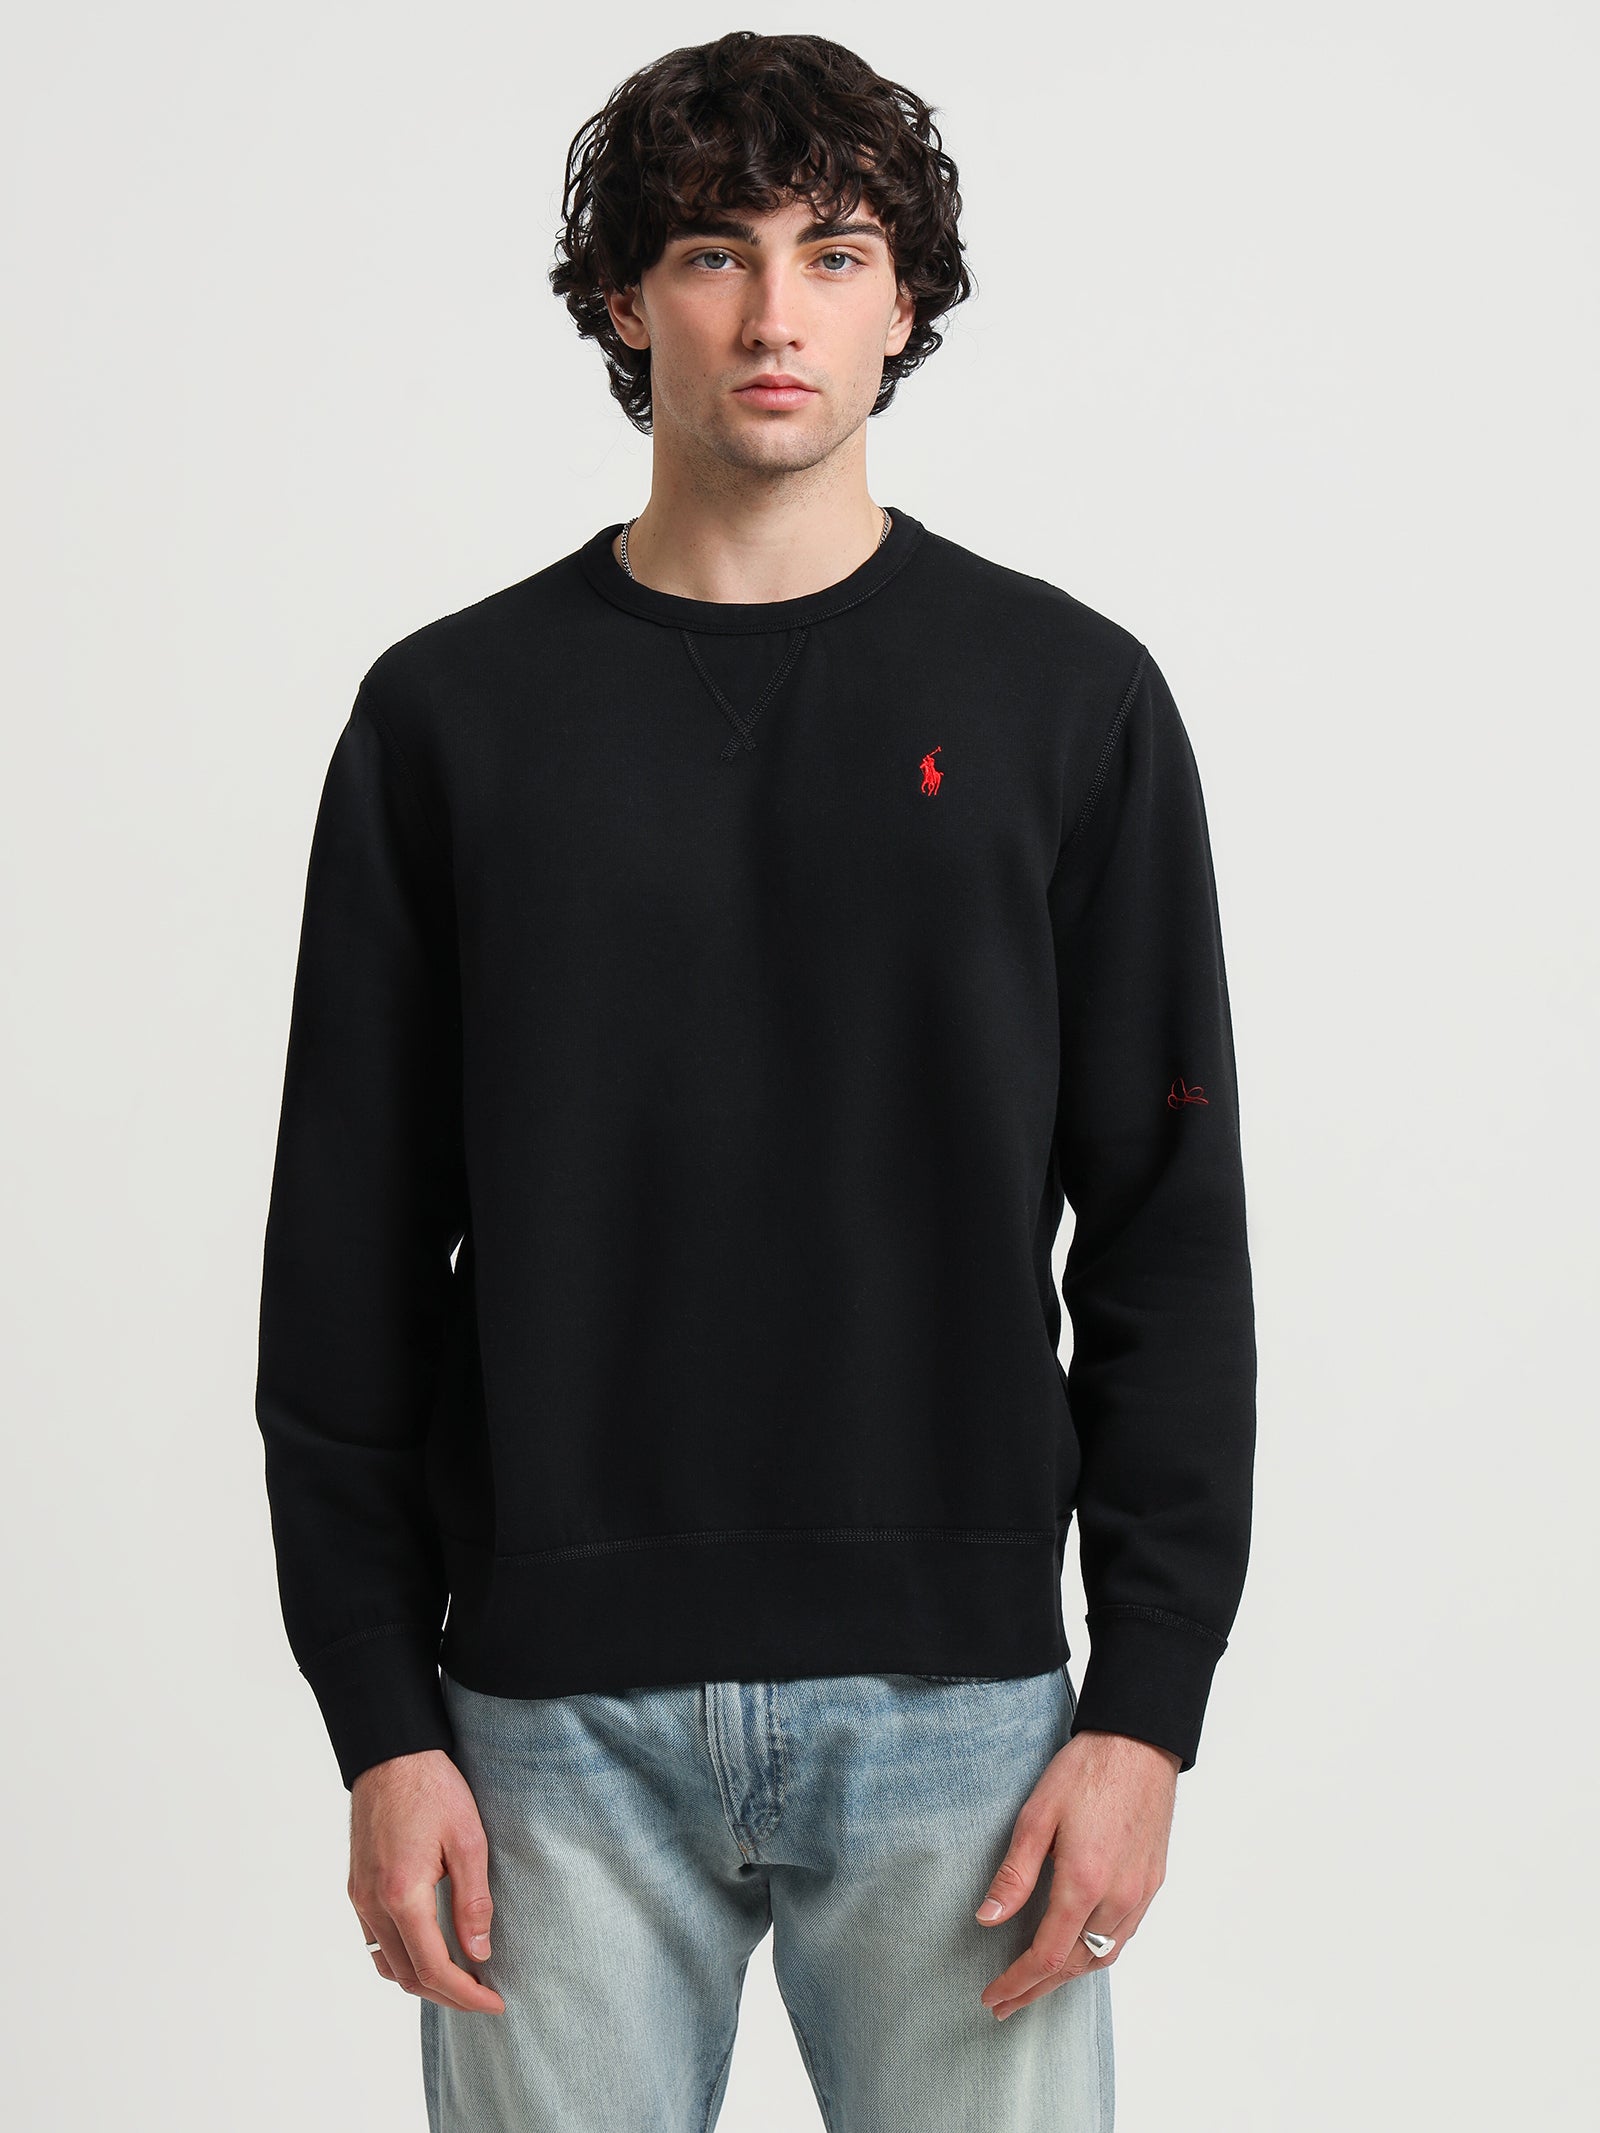 Long Sleeve Sweatshirt in Black - Glue Store NZ